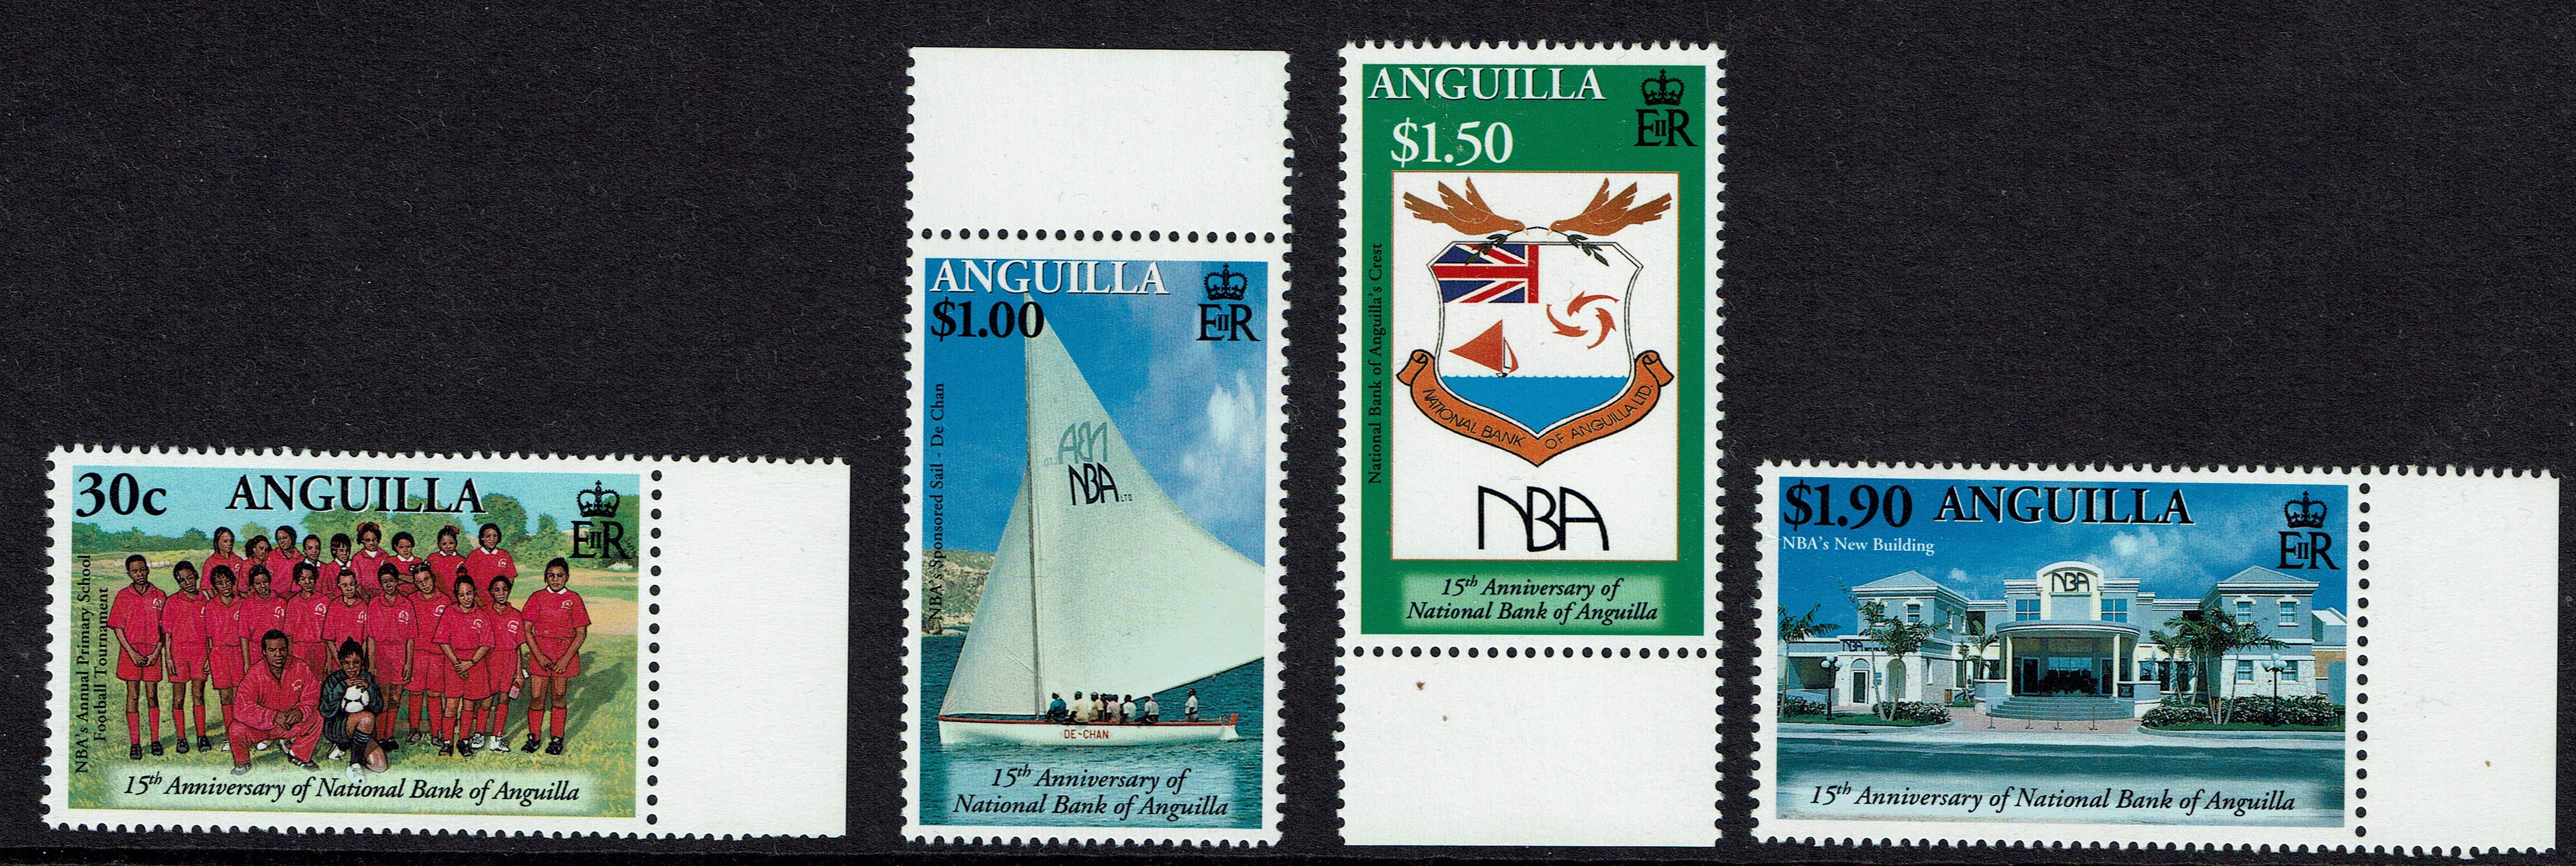 Anguilla SG 1086-89